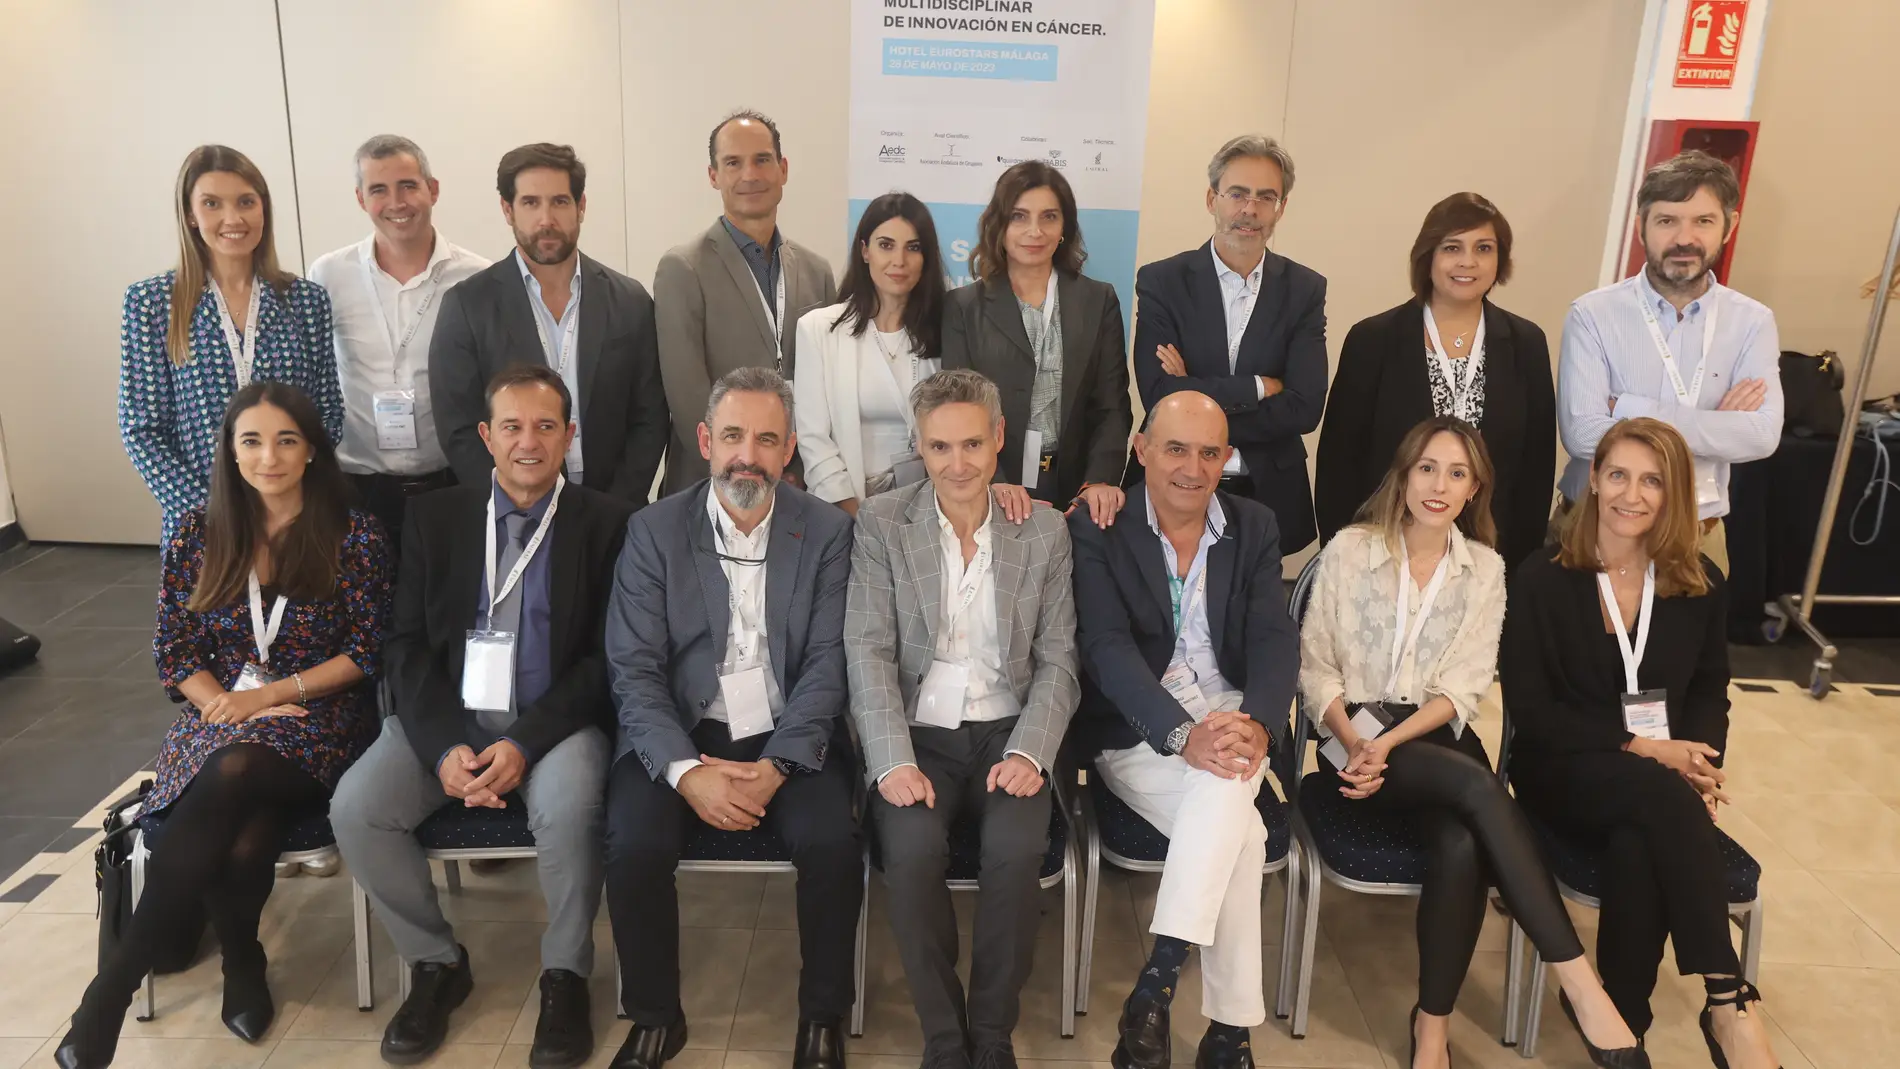 Quirónsalud reúne en Málaga a 150 expertos en la I Jornada Nacional Multidisciplinar de Innovación en Cáncer